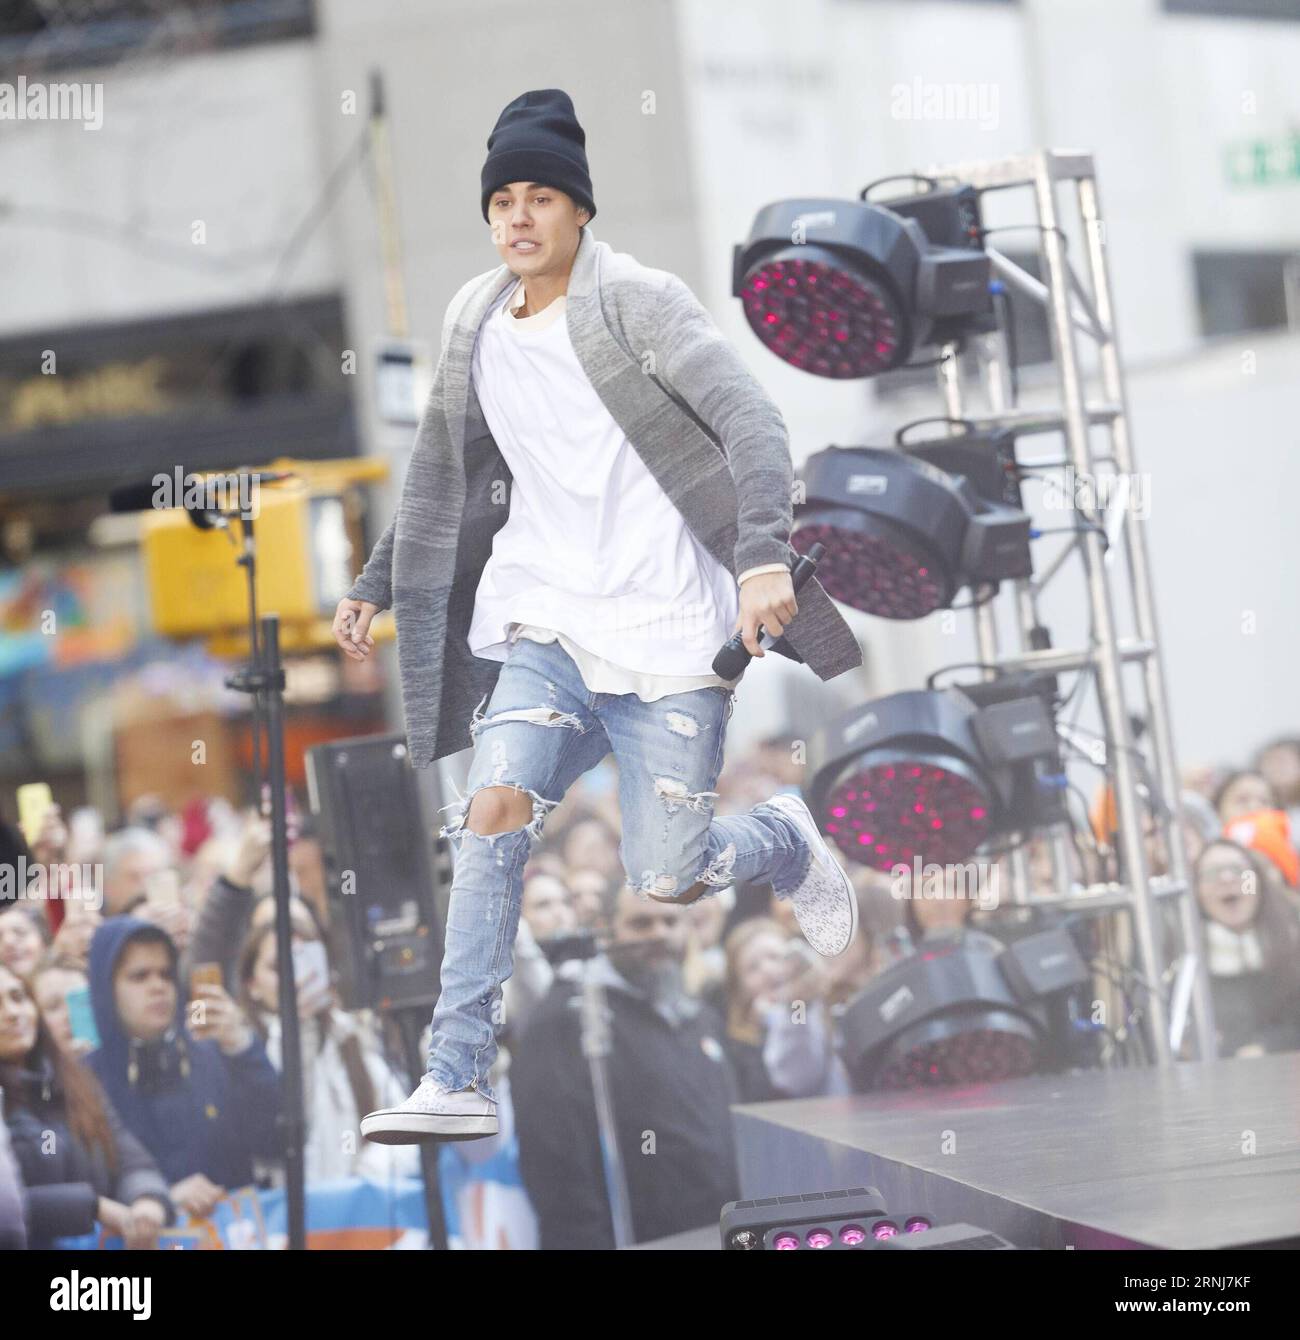 Justin Bieber actúa en el Today Show para promover el lanzamiento de su nuevo álbum Purpose USA - 2015 - Justin Bieber actúa en el Today Show en la ciudad de Nueva York AlexxMateo PUBLICATIONxNOTxINxCHN Justin Bieber actúa EN el Today Show para promover el lanzamiento de su nuevo álbum Propósito EE.UU. 2015 Justin Bieber actúa EN el Today Show en Nuevo ciudad de York PUBLICATIONxNOTxINxCHN Foto de stock